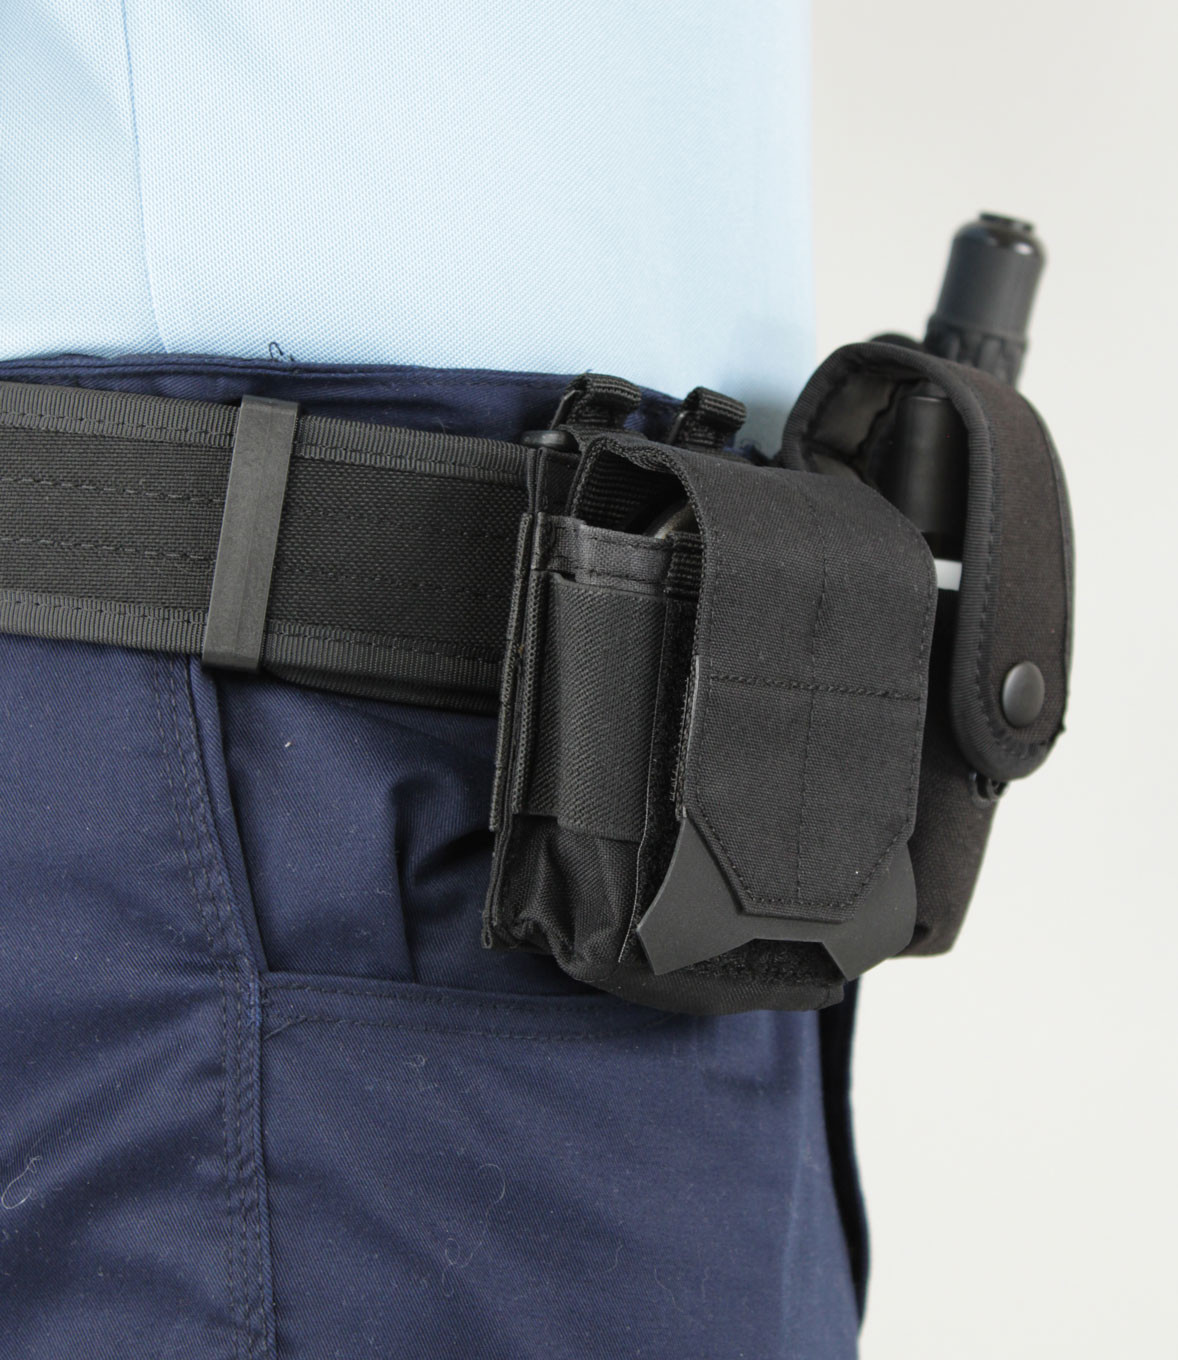 Porte-Menottes Flex 5.11 Tactical - Porte-menottes sur  -  Vêtements militaire et Equipements de Sécurité